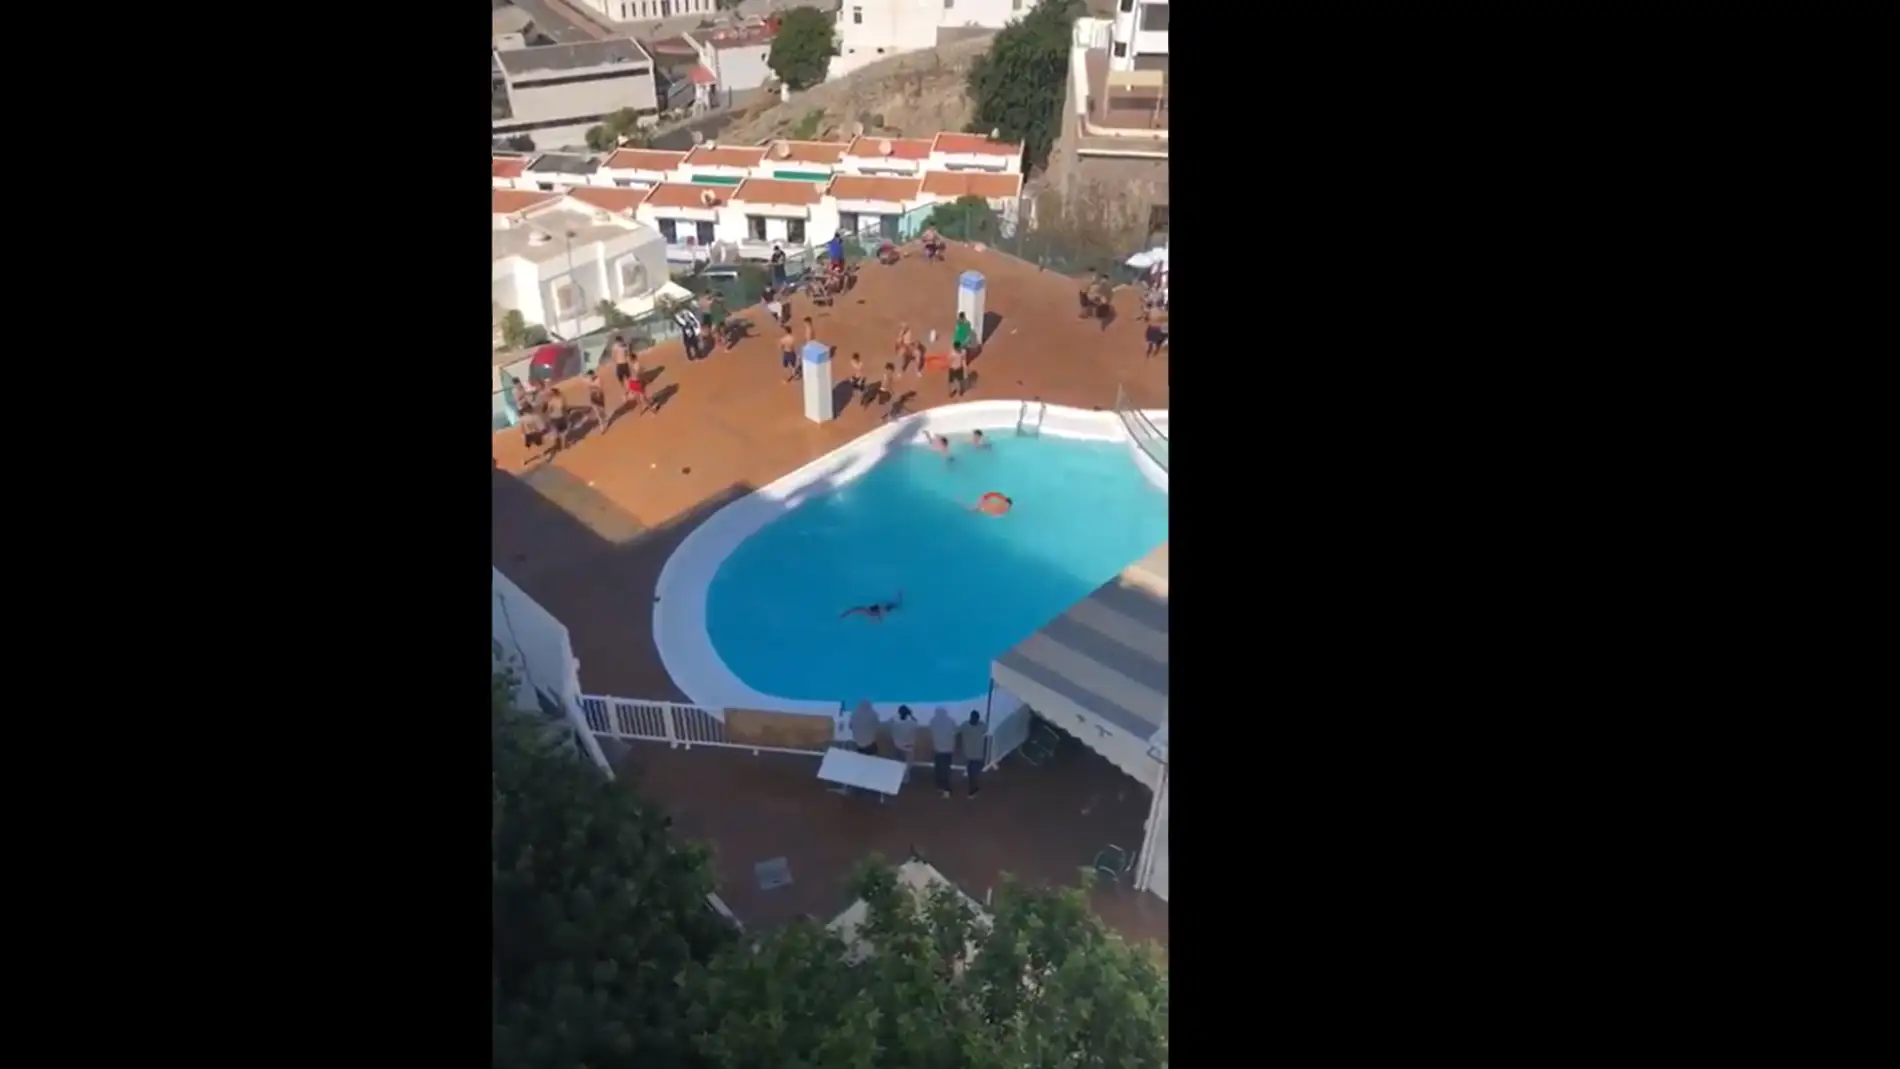 La Guardia Civil interviene en un hotel de Gran Canaria que acoge migrantes con numerosos jóvenes bañándose